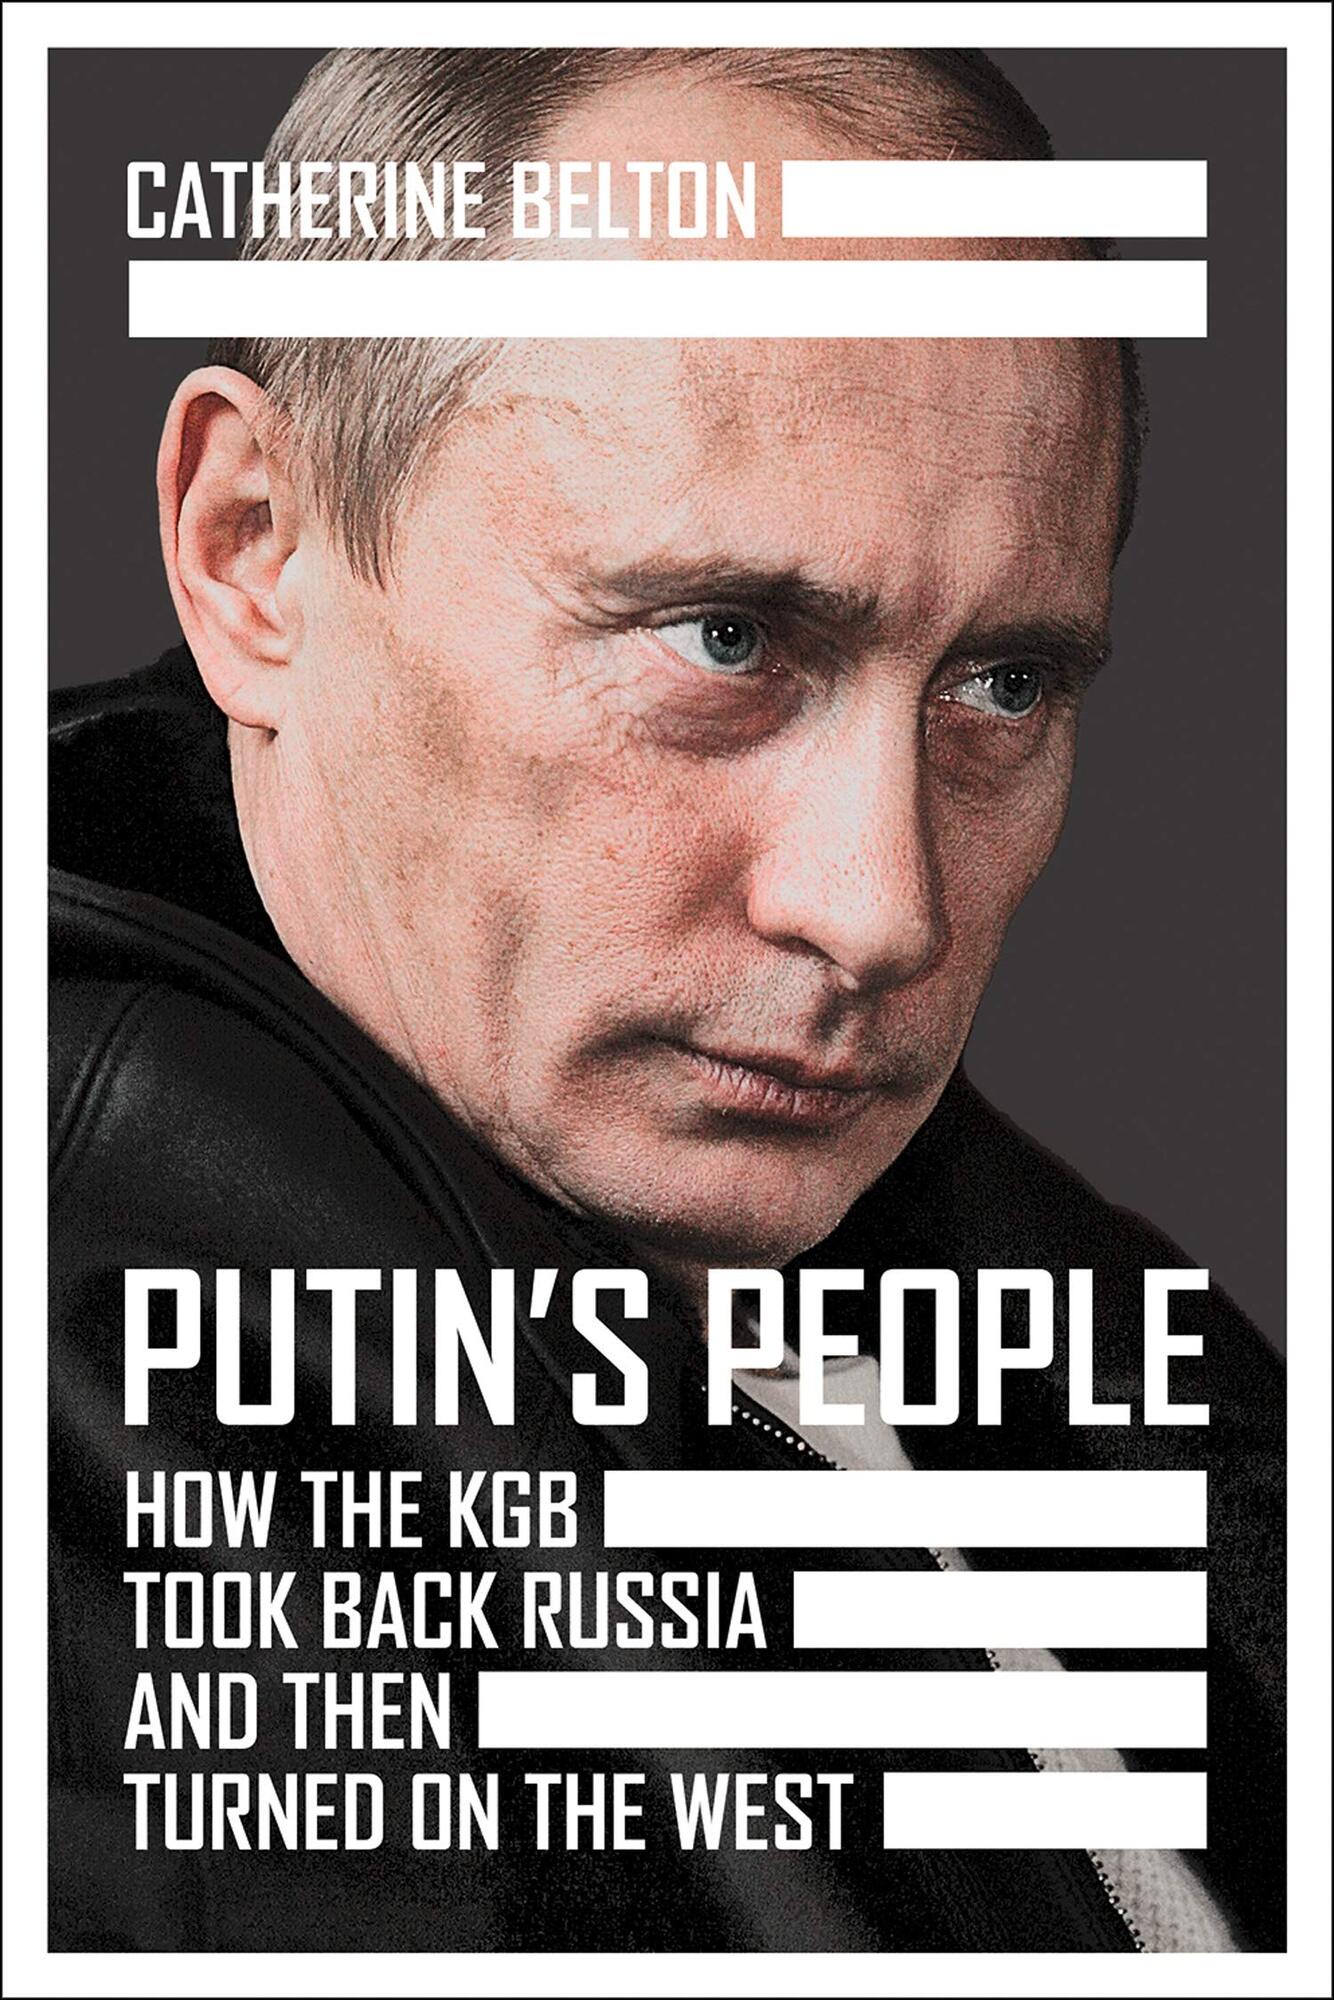 Обкладинка нової книги про Путіна